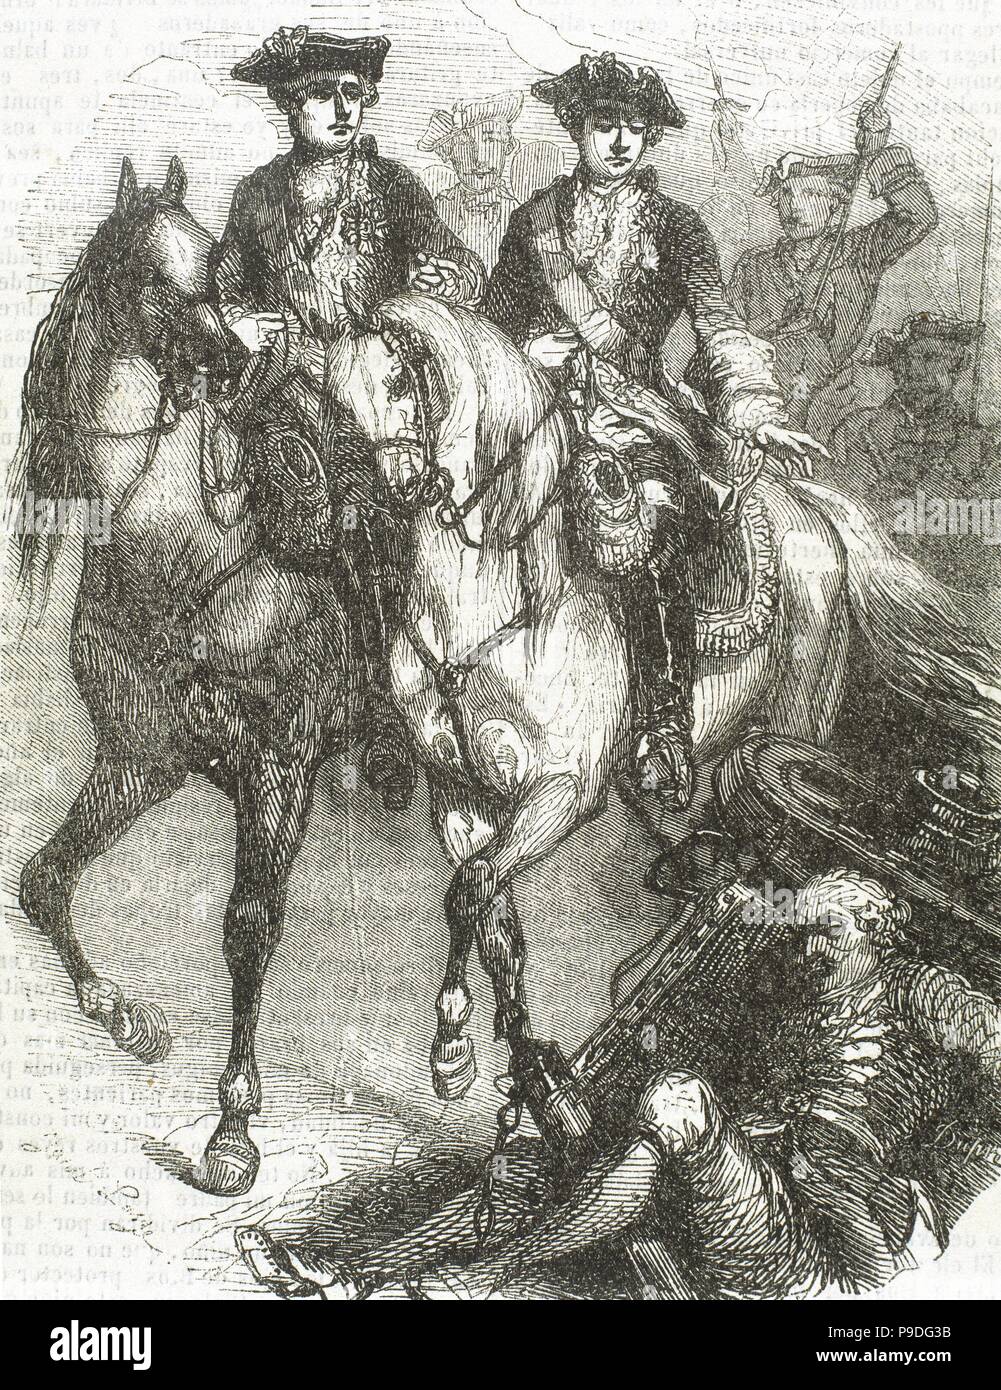 Guerre de Succession d'Autriche (1740-1748). Louis XV (1710-1774), roi de France et son fils Louis, dauphin de France (1729-1765) à la bataille de Fontenoy, 11 mai 1745. Gravure, 1851. Banque D'Images